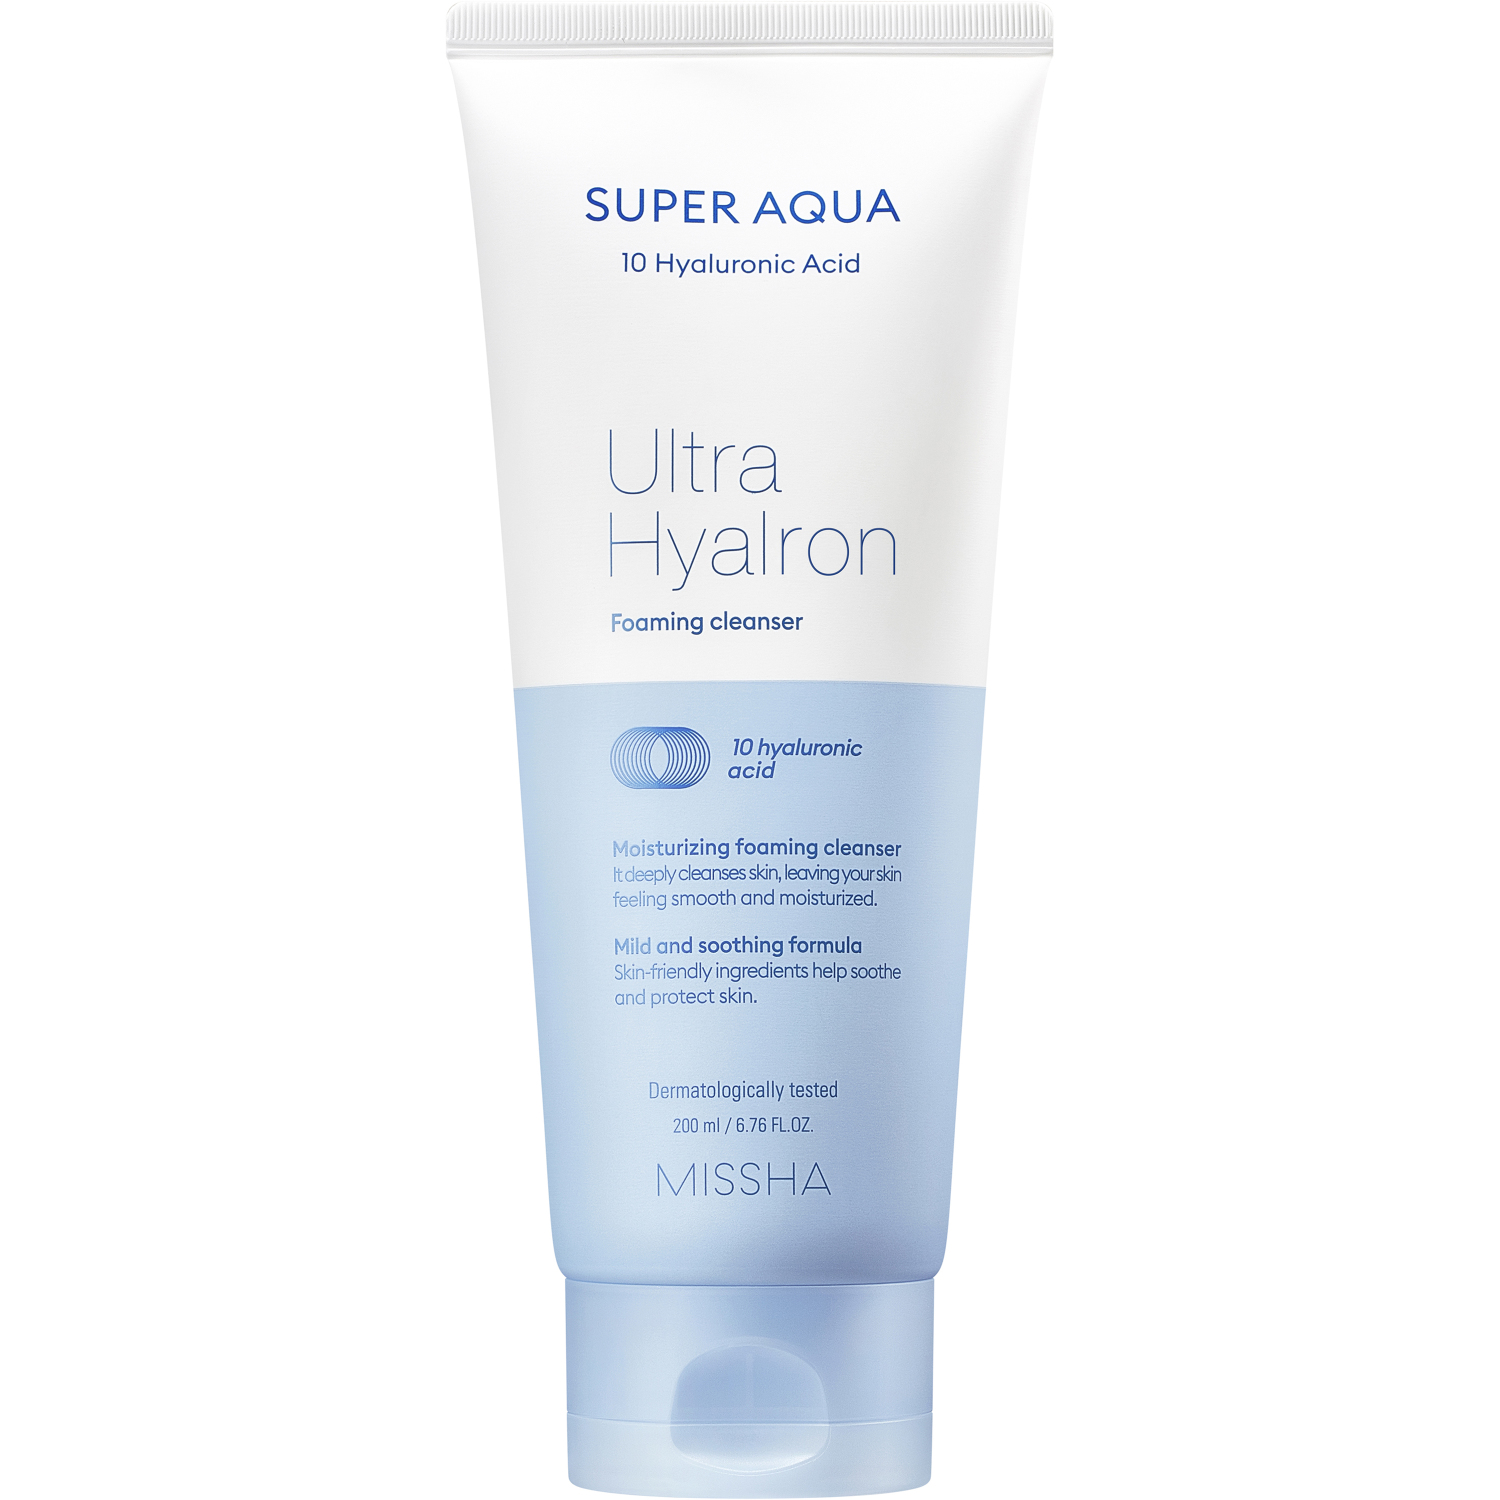 Пенка Missha Super Aqua Ultra Hyalron для умывания и снятия макияжа, 200 мл missha пенка для умывания super aqua cell renew с секрецией улитки